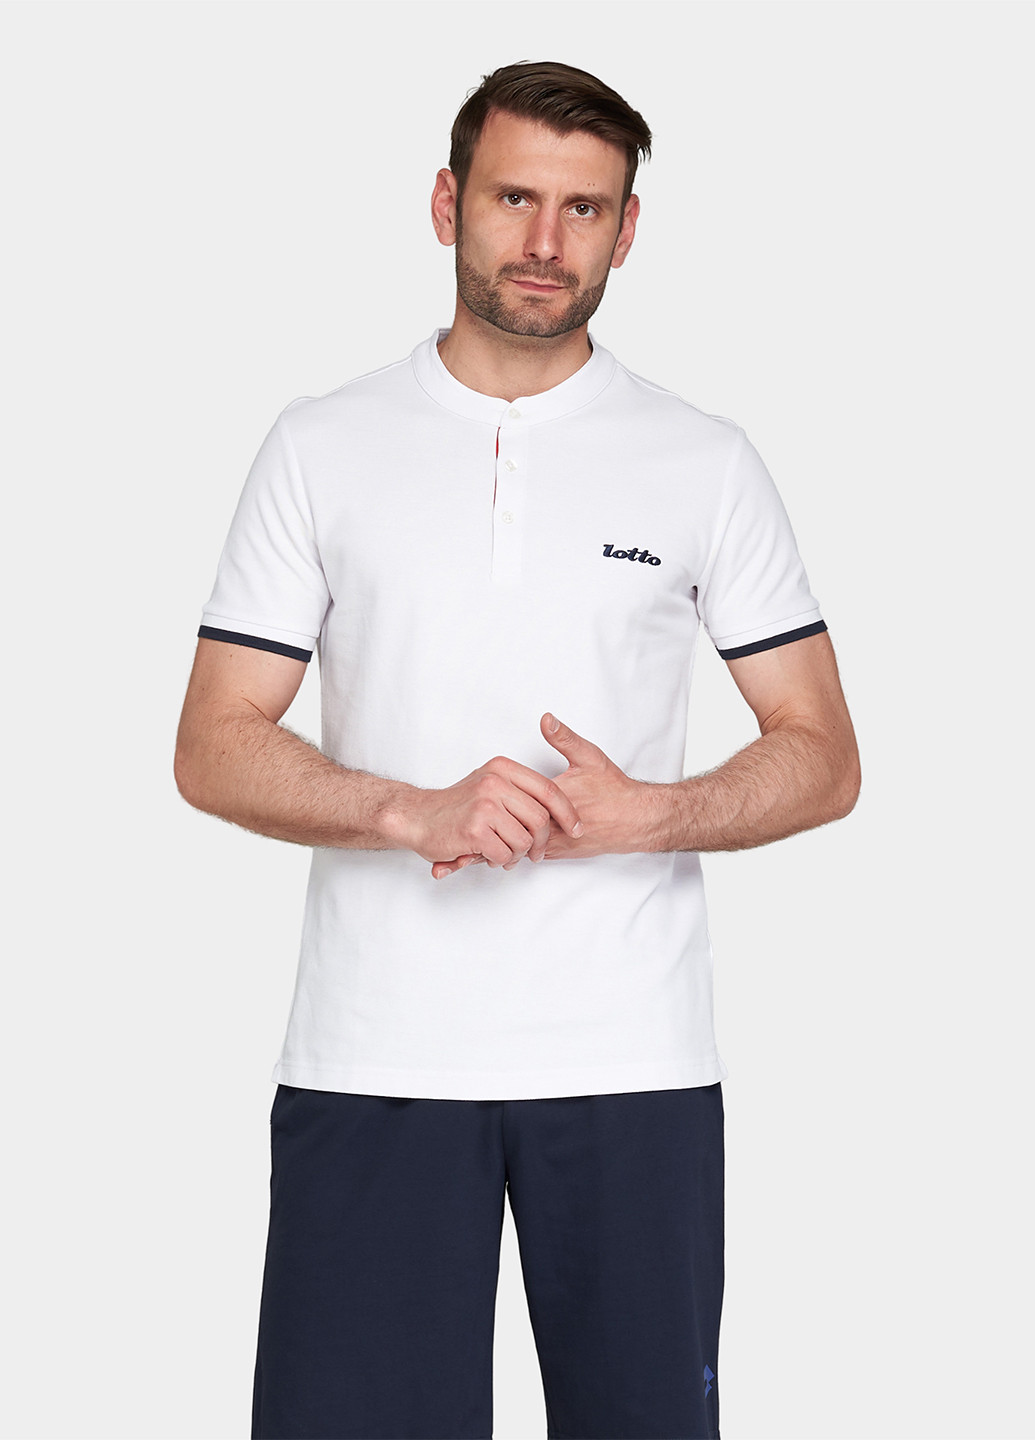 Белая футболка-поло для мужчин Lotto однотонная